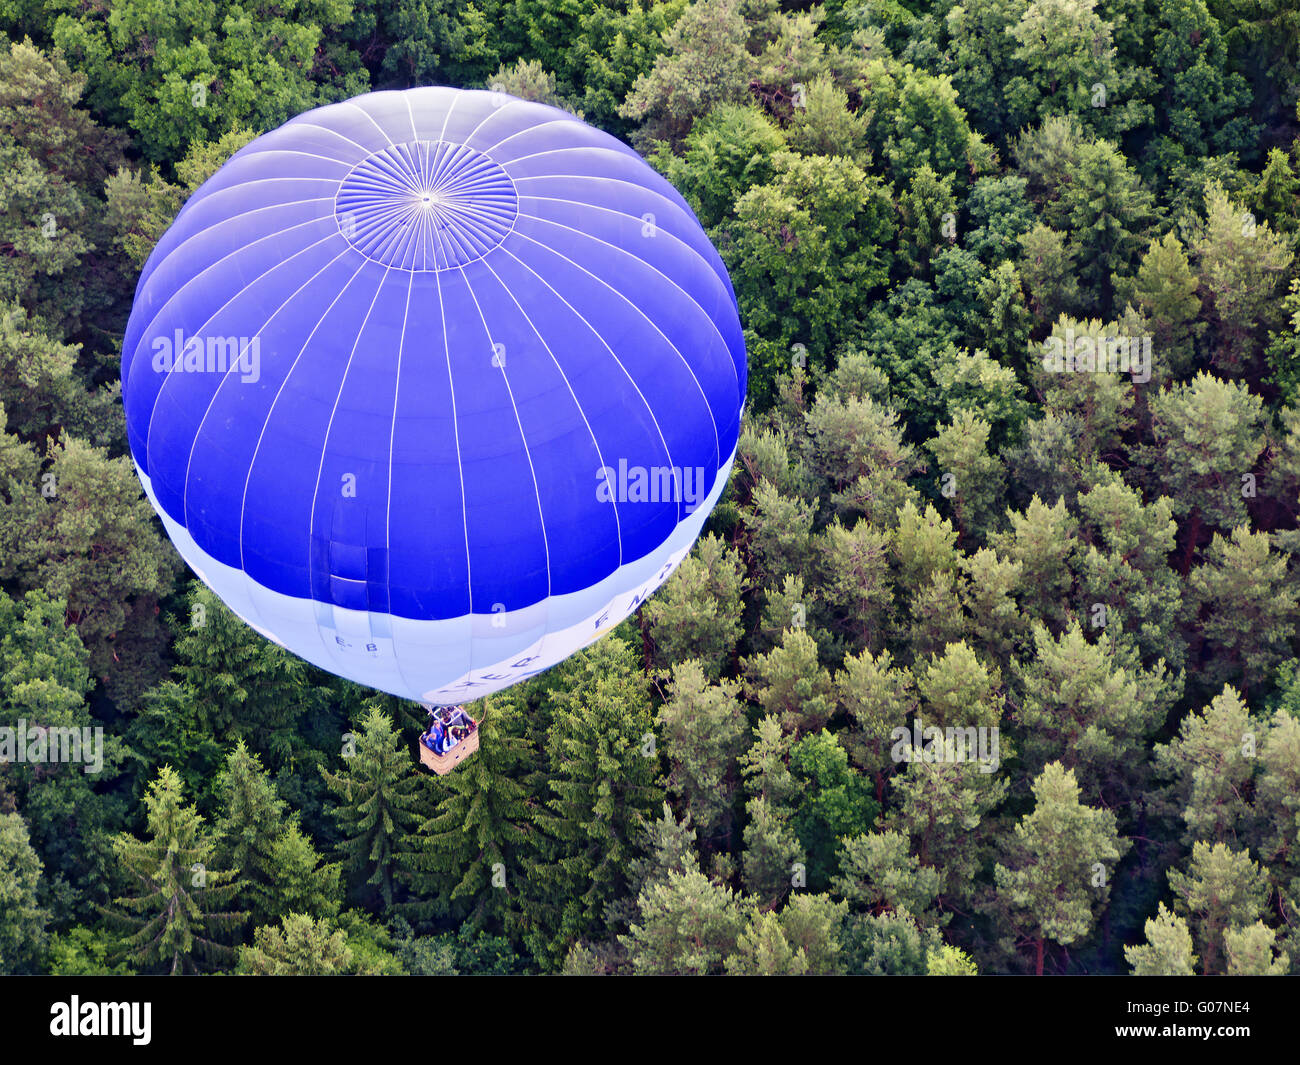 Ot-pallone aerostatico in bilico su una collina boscosa unità aera Foto Stock